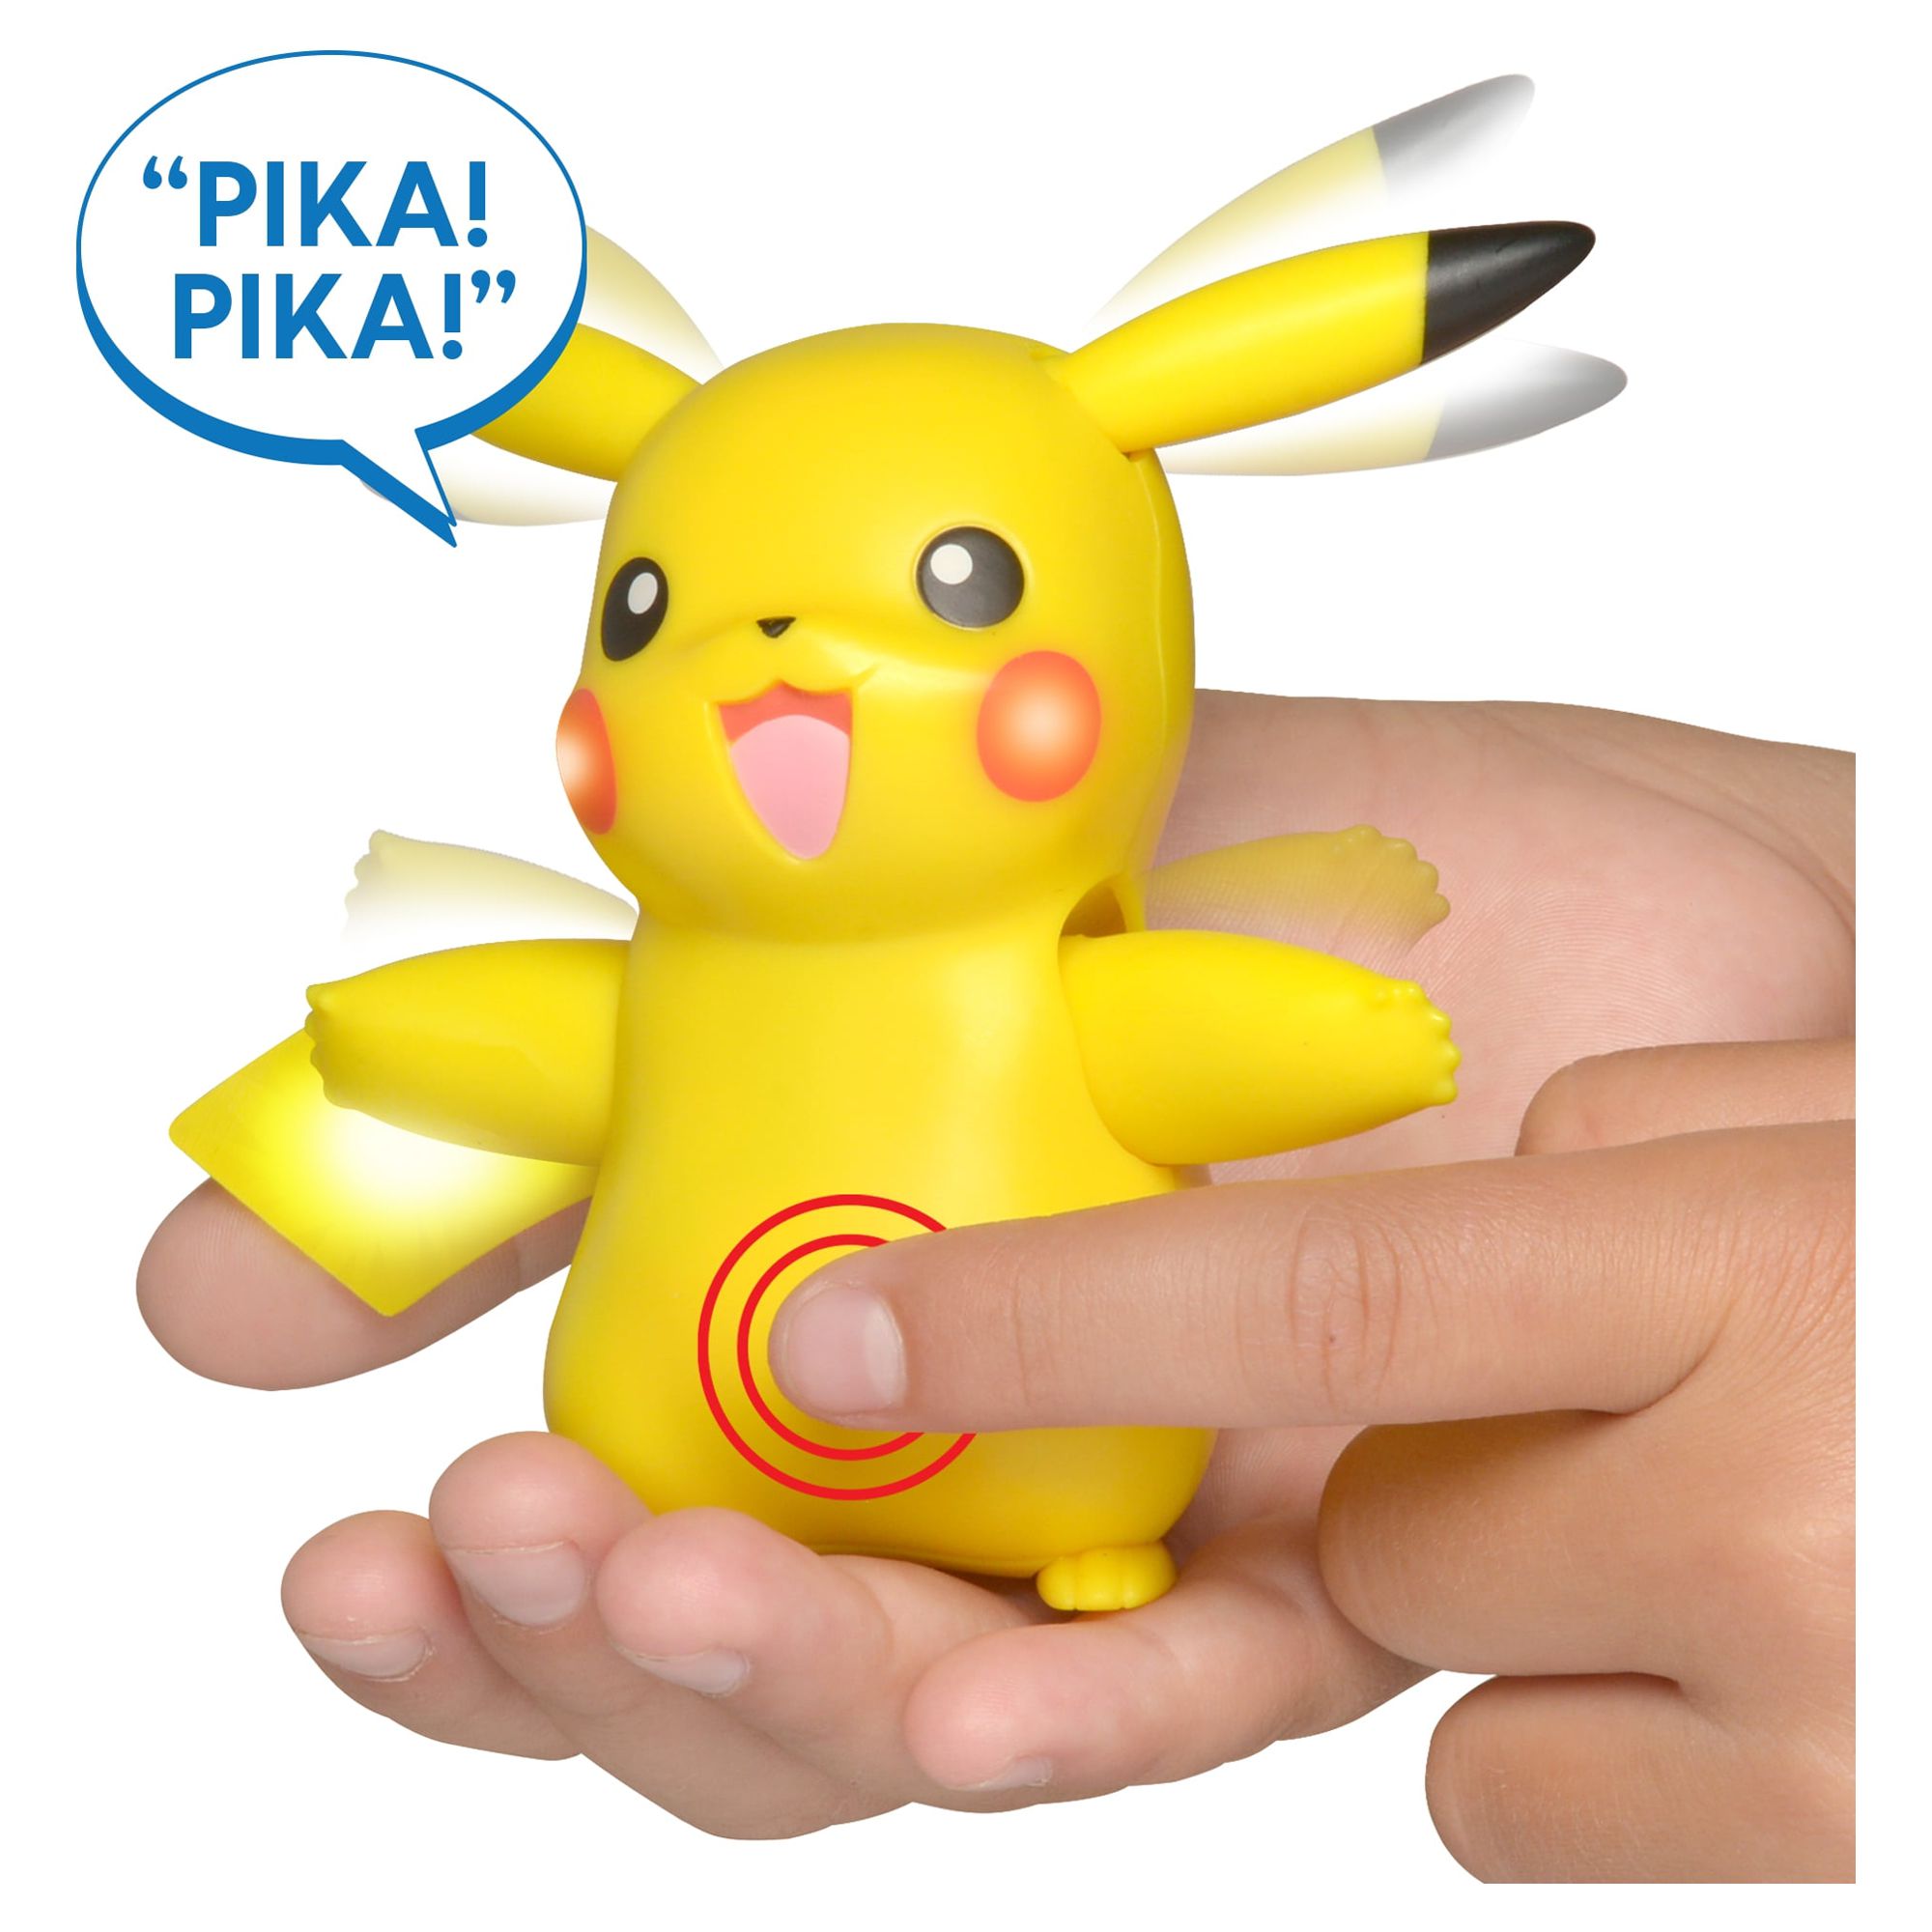 Pokémon My Partner Pikachu Figure - image 1 of 7